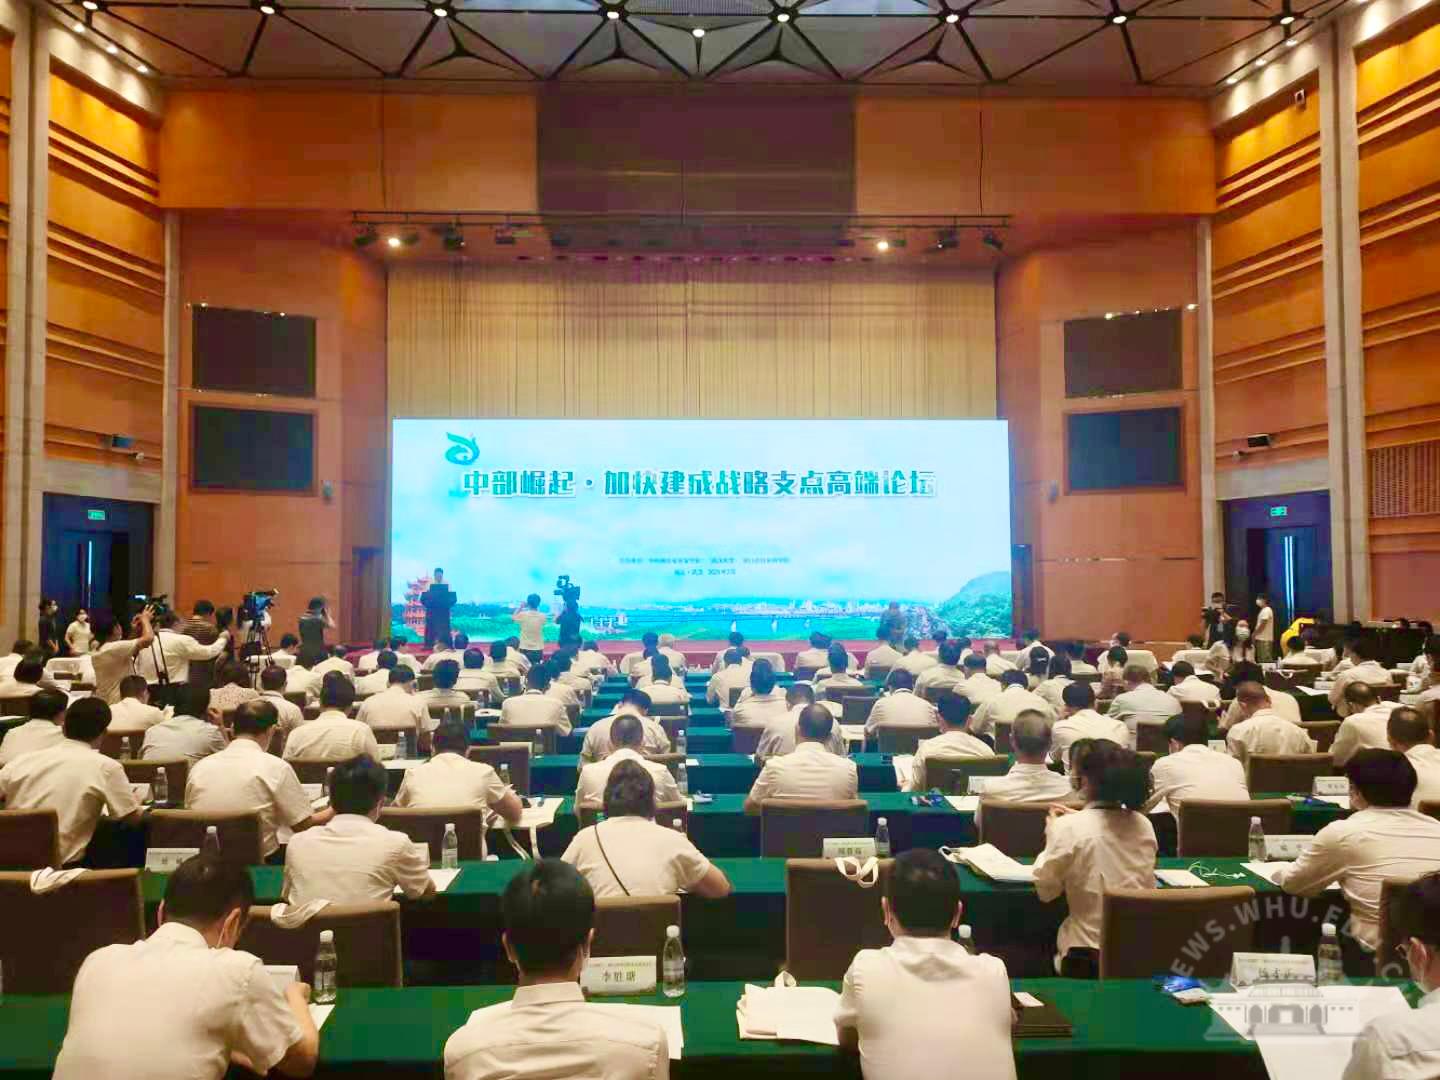 武汉大学干部培训——“中部崛起·加快建成战略支点”高端论坛在汉举行